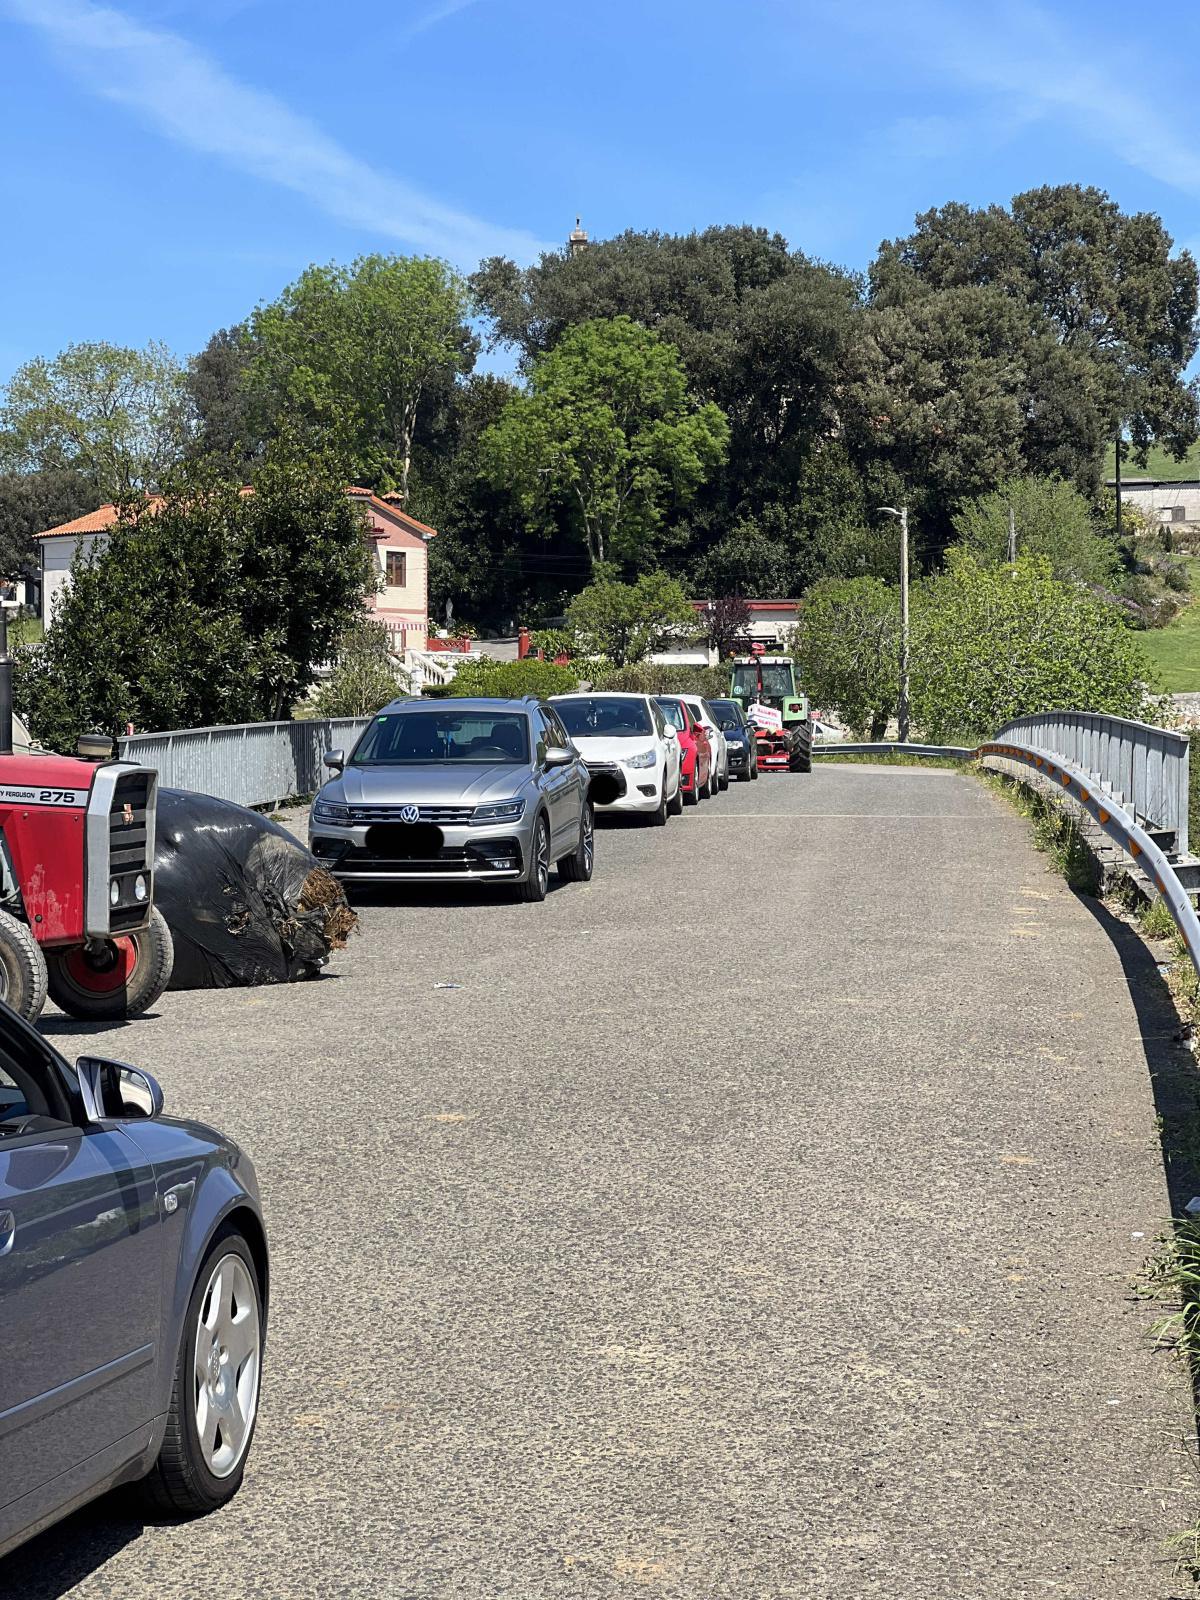 [FOTO] AVISO MUY IMPORTANTE, necesitamos que quitéis los coches aparcados en este lugar para poder hacer el "pasillo humano" Por favor, colabora con nosotros. Muchas gracias.